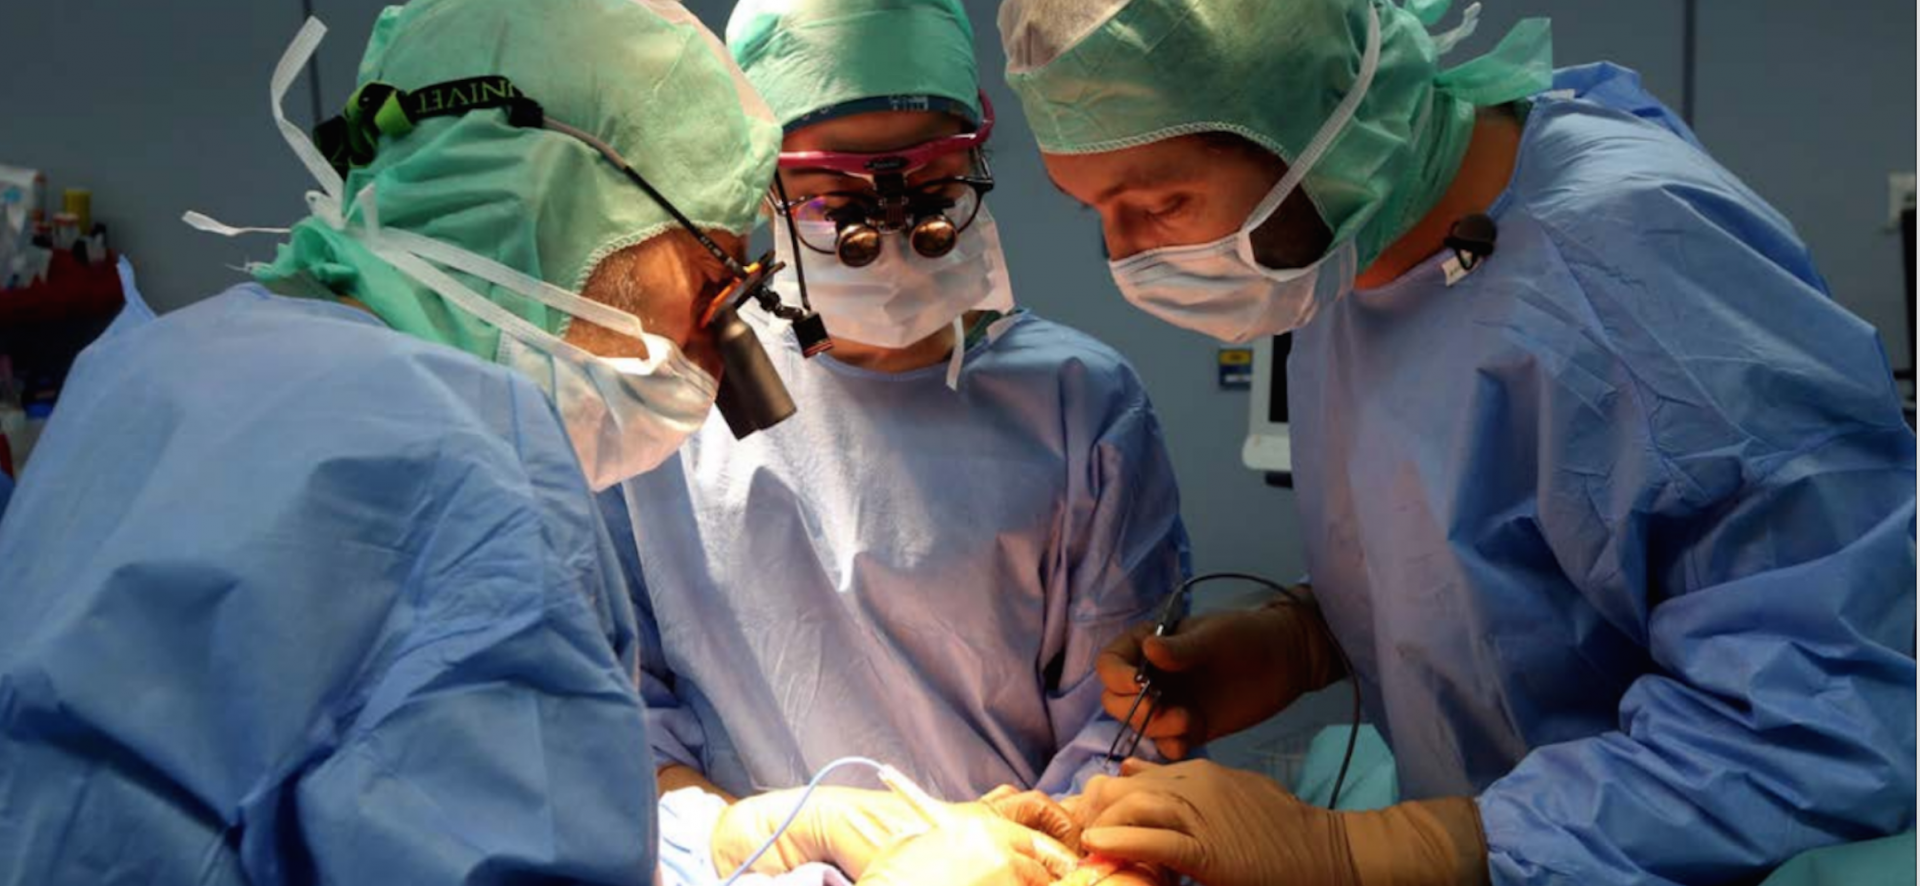 Operation reconstruction mammaire Ajaccio Corse